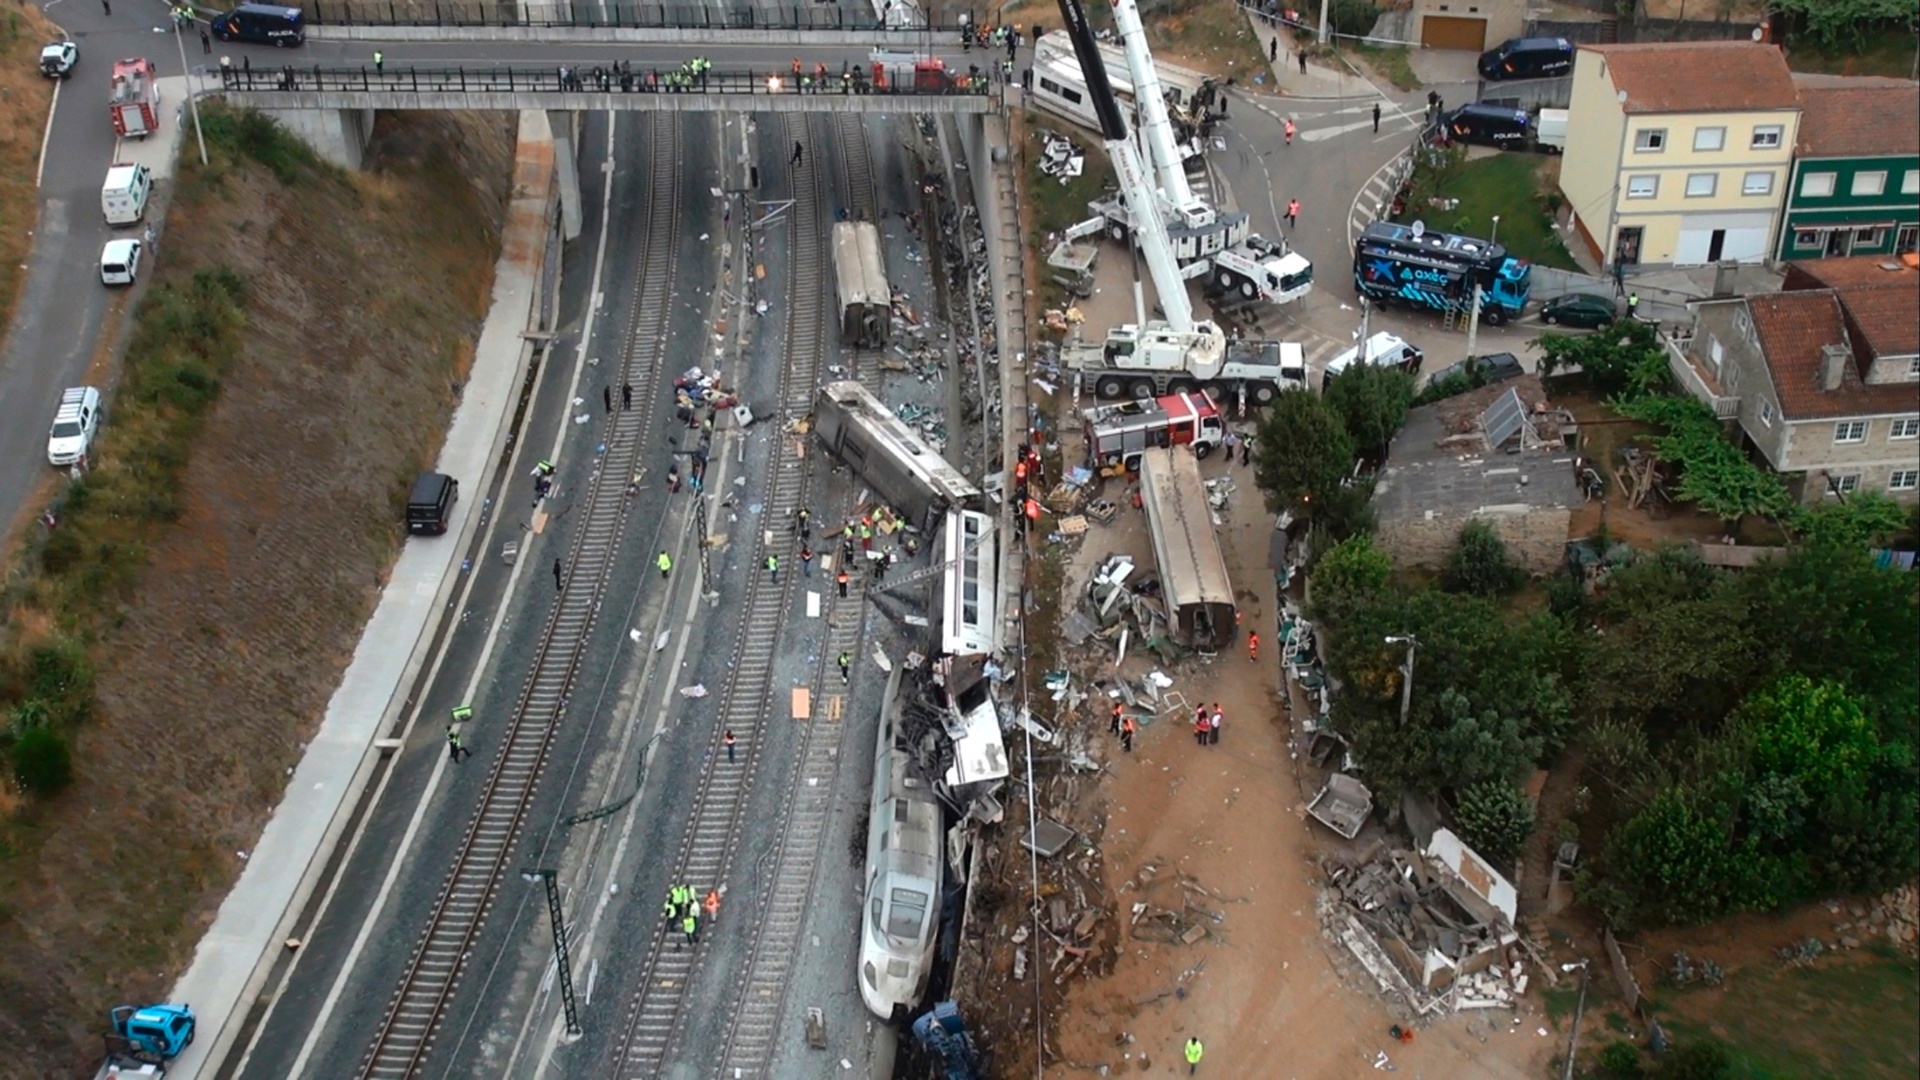 vista-aerea-do-acidente-de-trem-proximo-a-santiago-de-compostela-noroeste-da-espanha-nesta-imagem-capturada-de-um-video-1374864740501_1920x1080.jpg